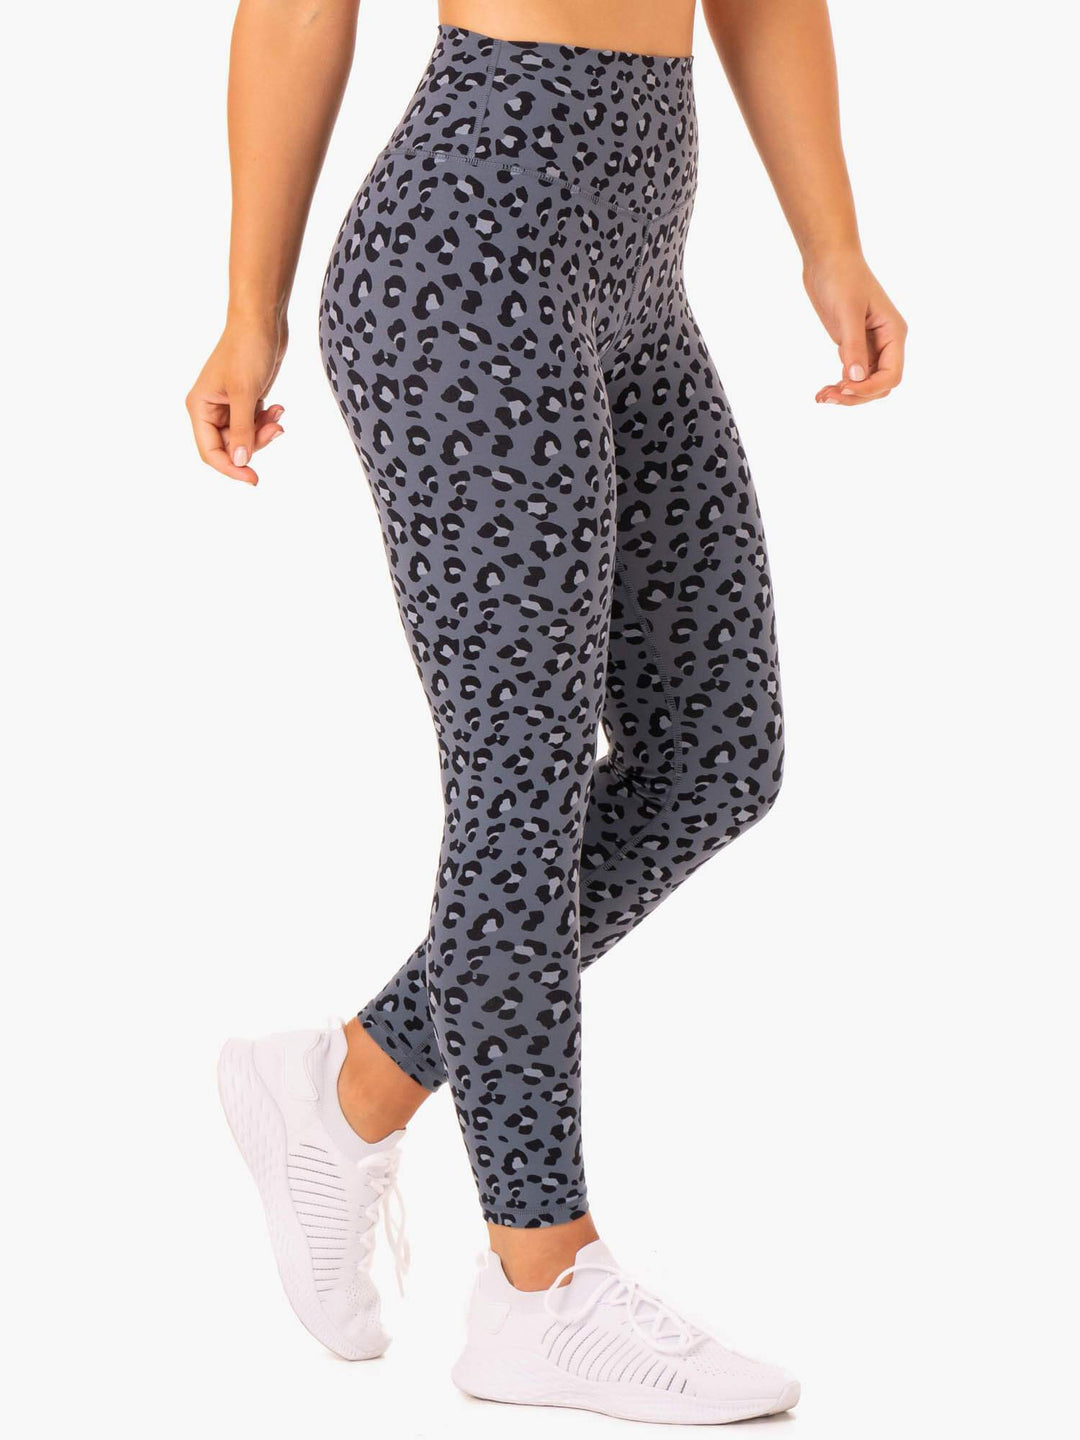 Hybrid Full Length Leggings - Steel Blue Leopard Clothing Ryderwear 